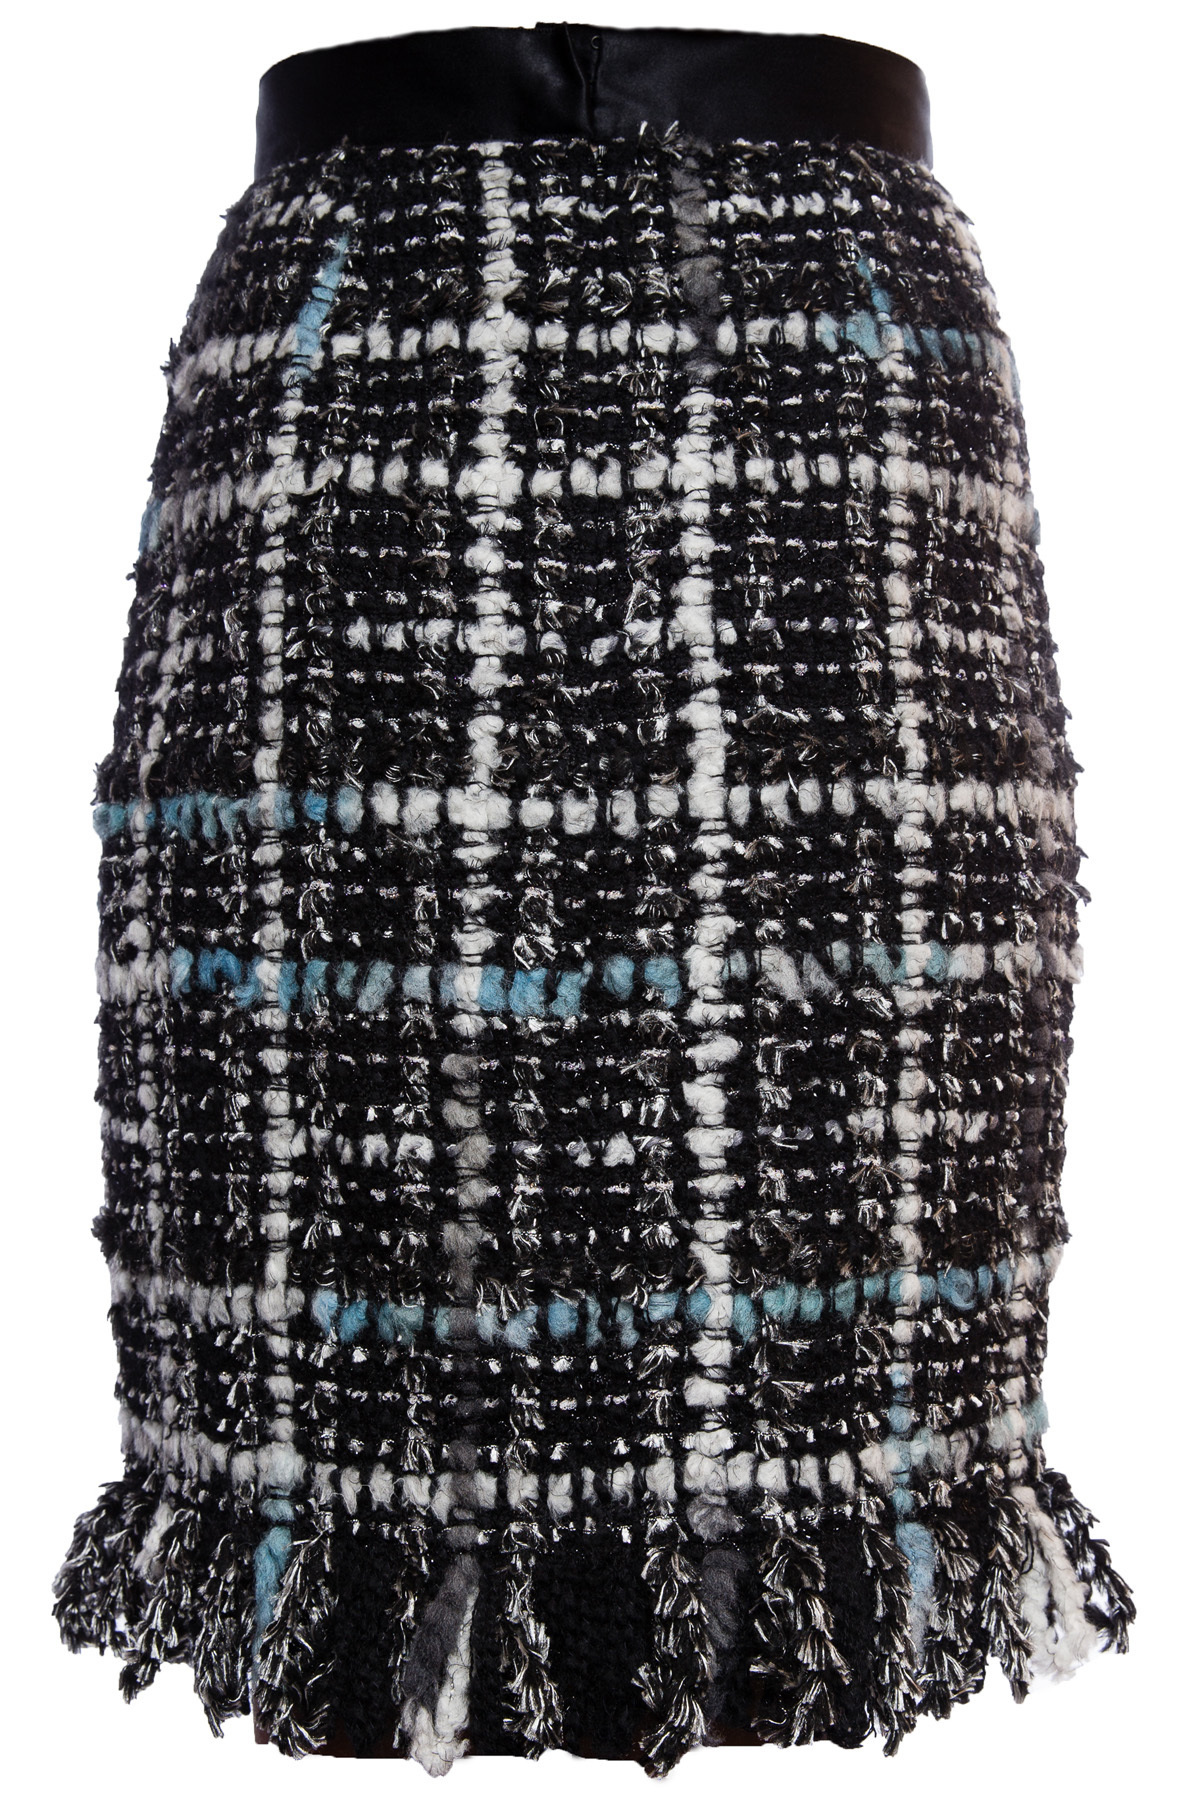 Элегантная юбка в клетку из твида от Chanel, 42 размер.